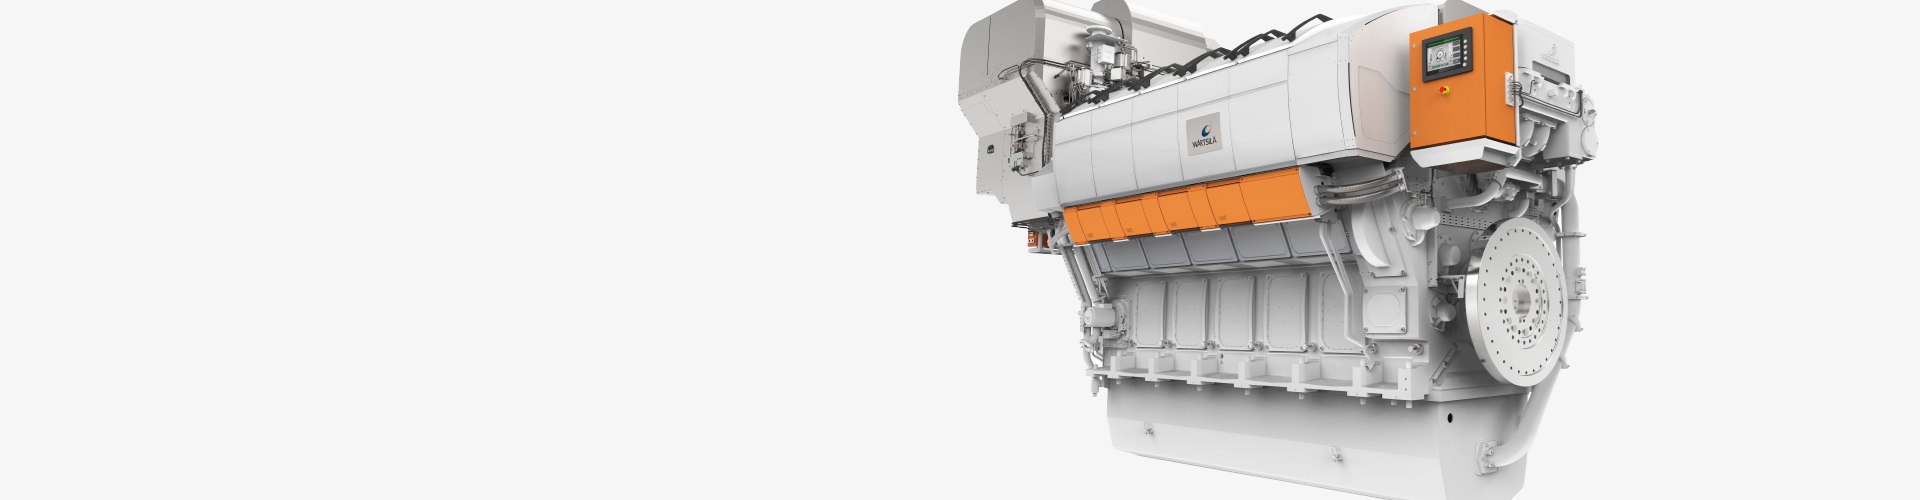 Wärtsilä 31 - the world's most efficient 4-stroke diesel engine